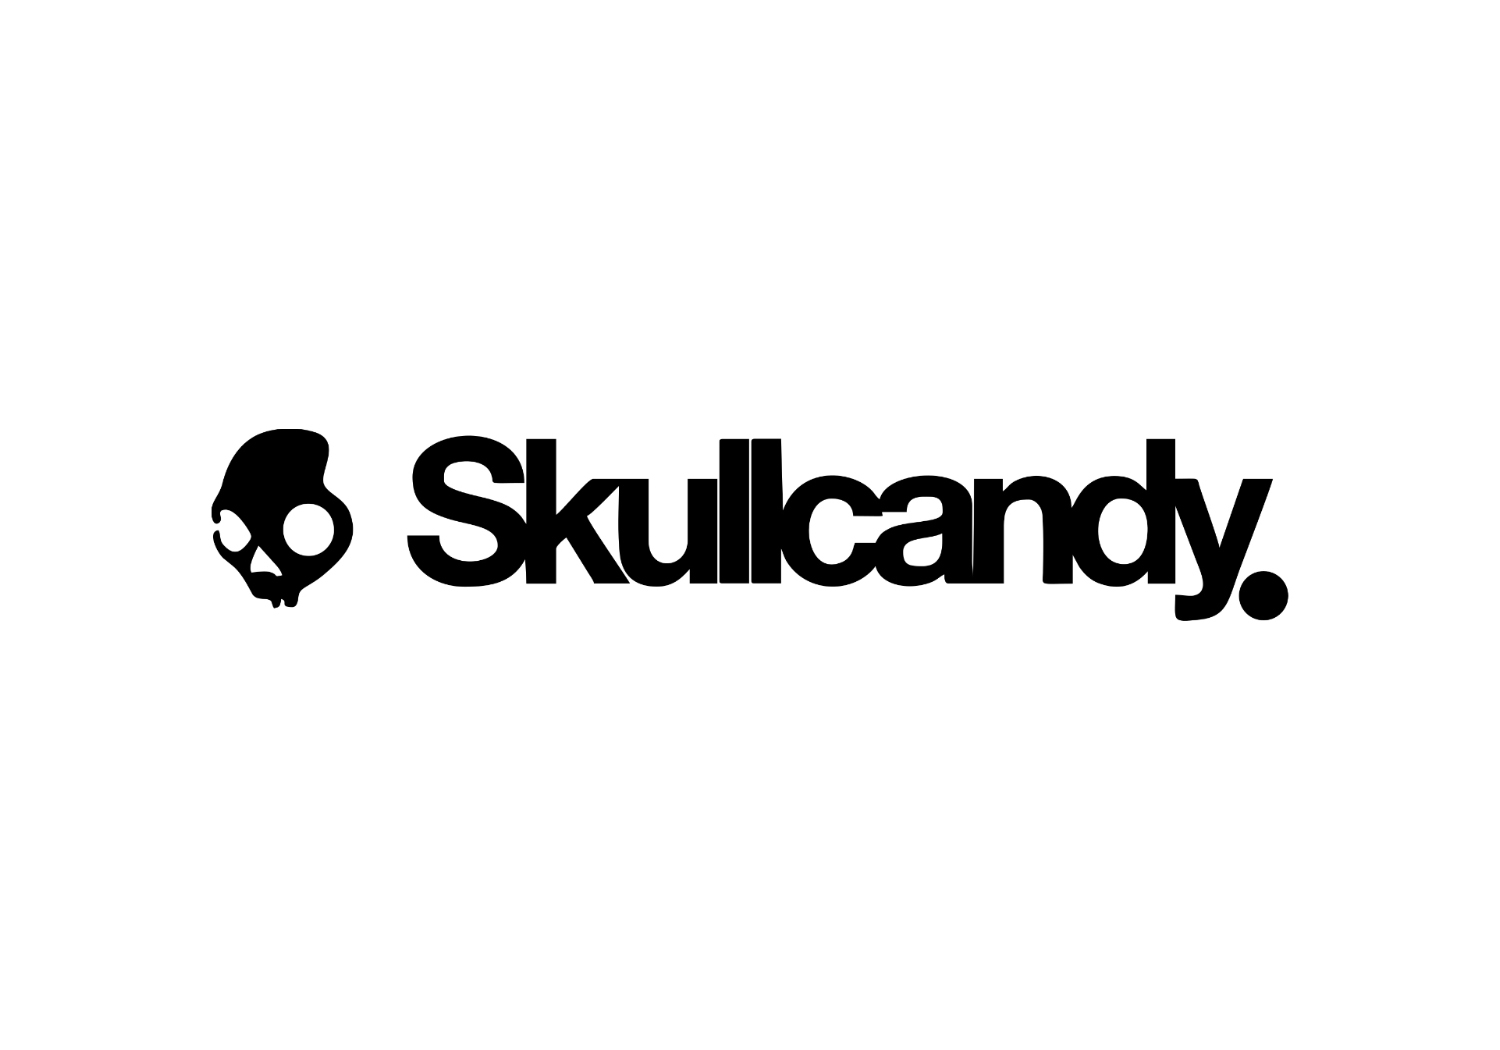 skull candy.jpg